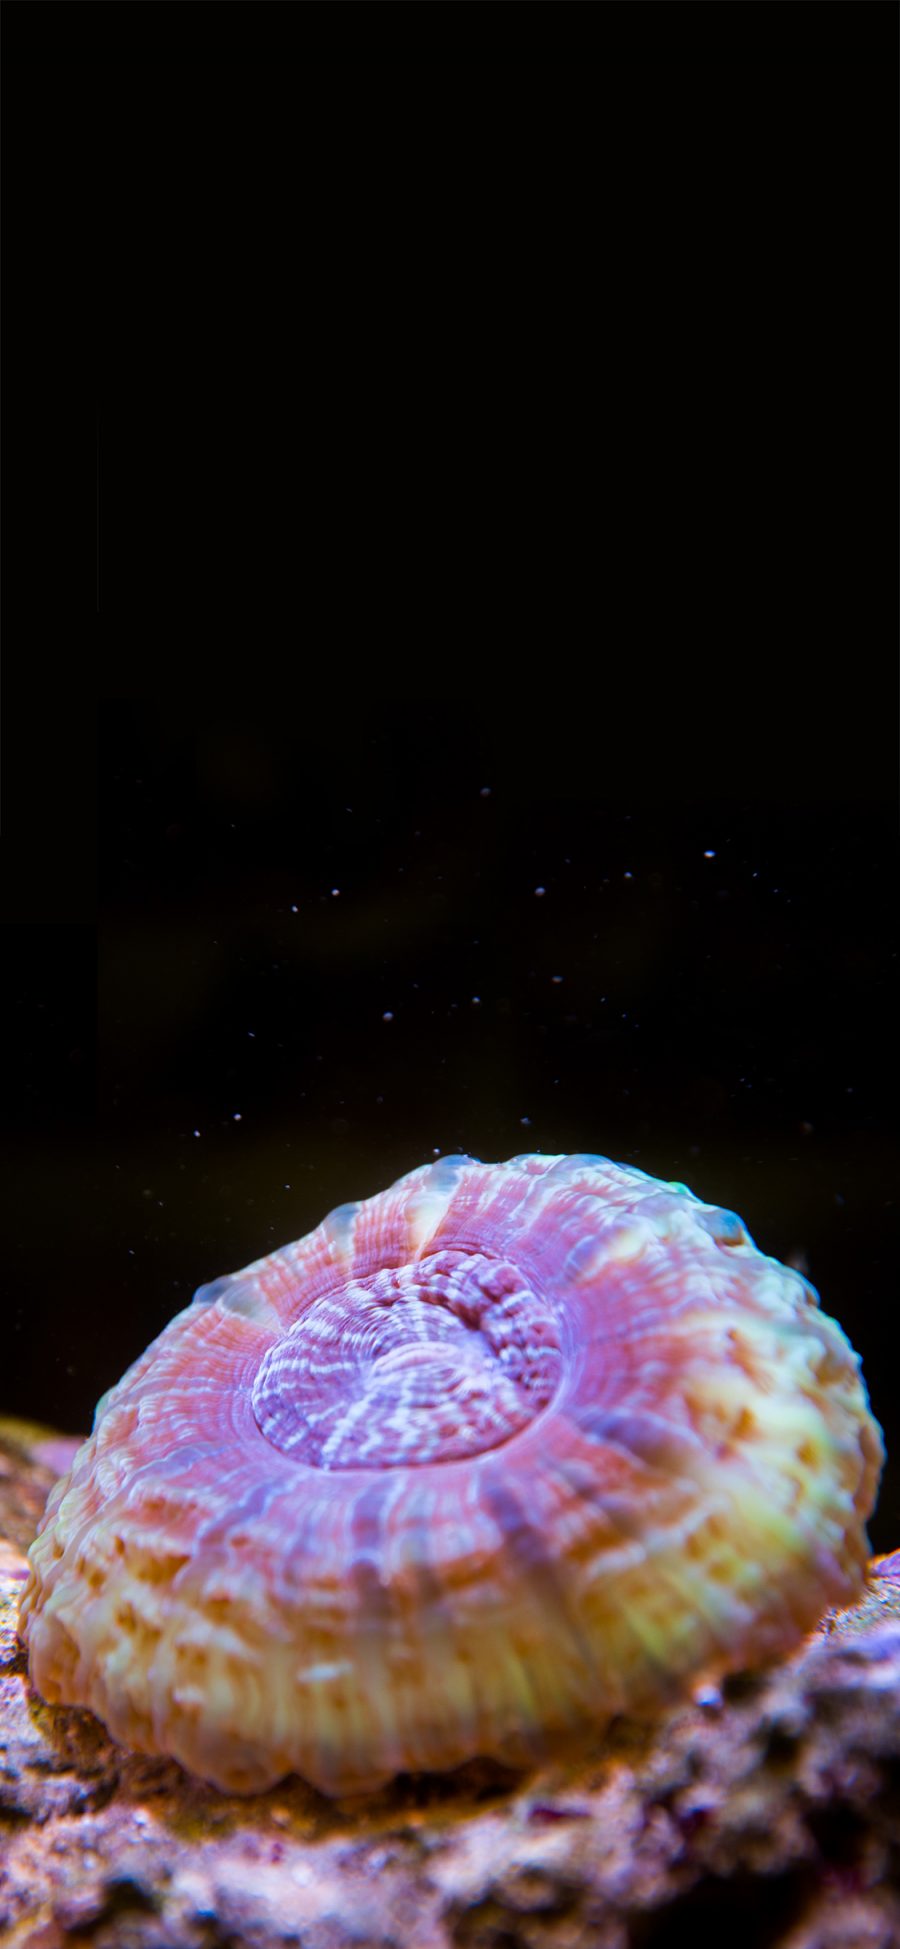 [2436×1125]海洋生物 水母 伞状 苹果手机壁纸图片